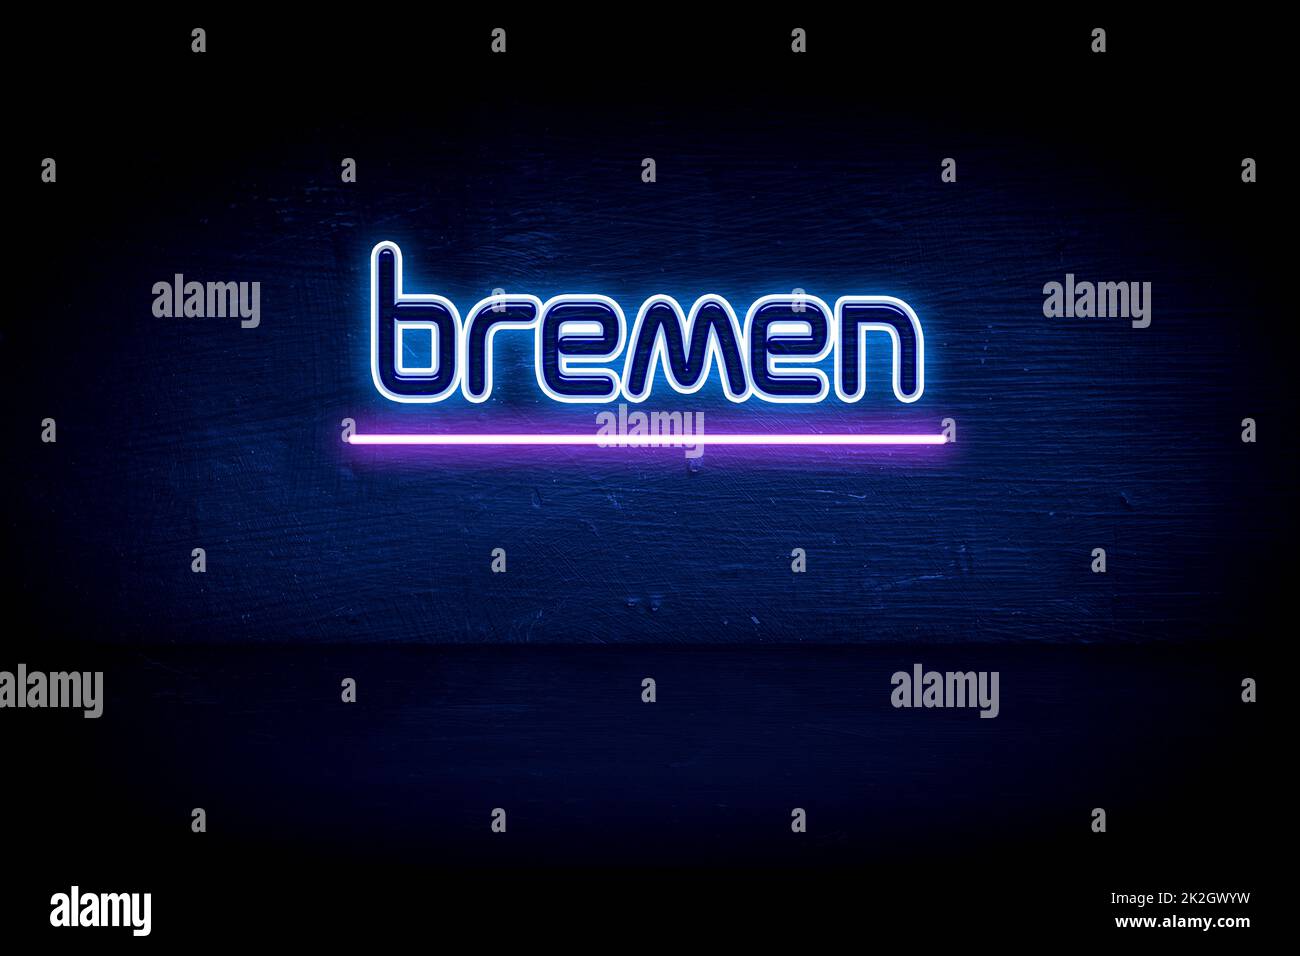 Bremen - panneau d'annonce au néon bleu Banque D'Images